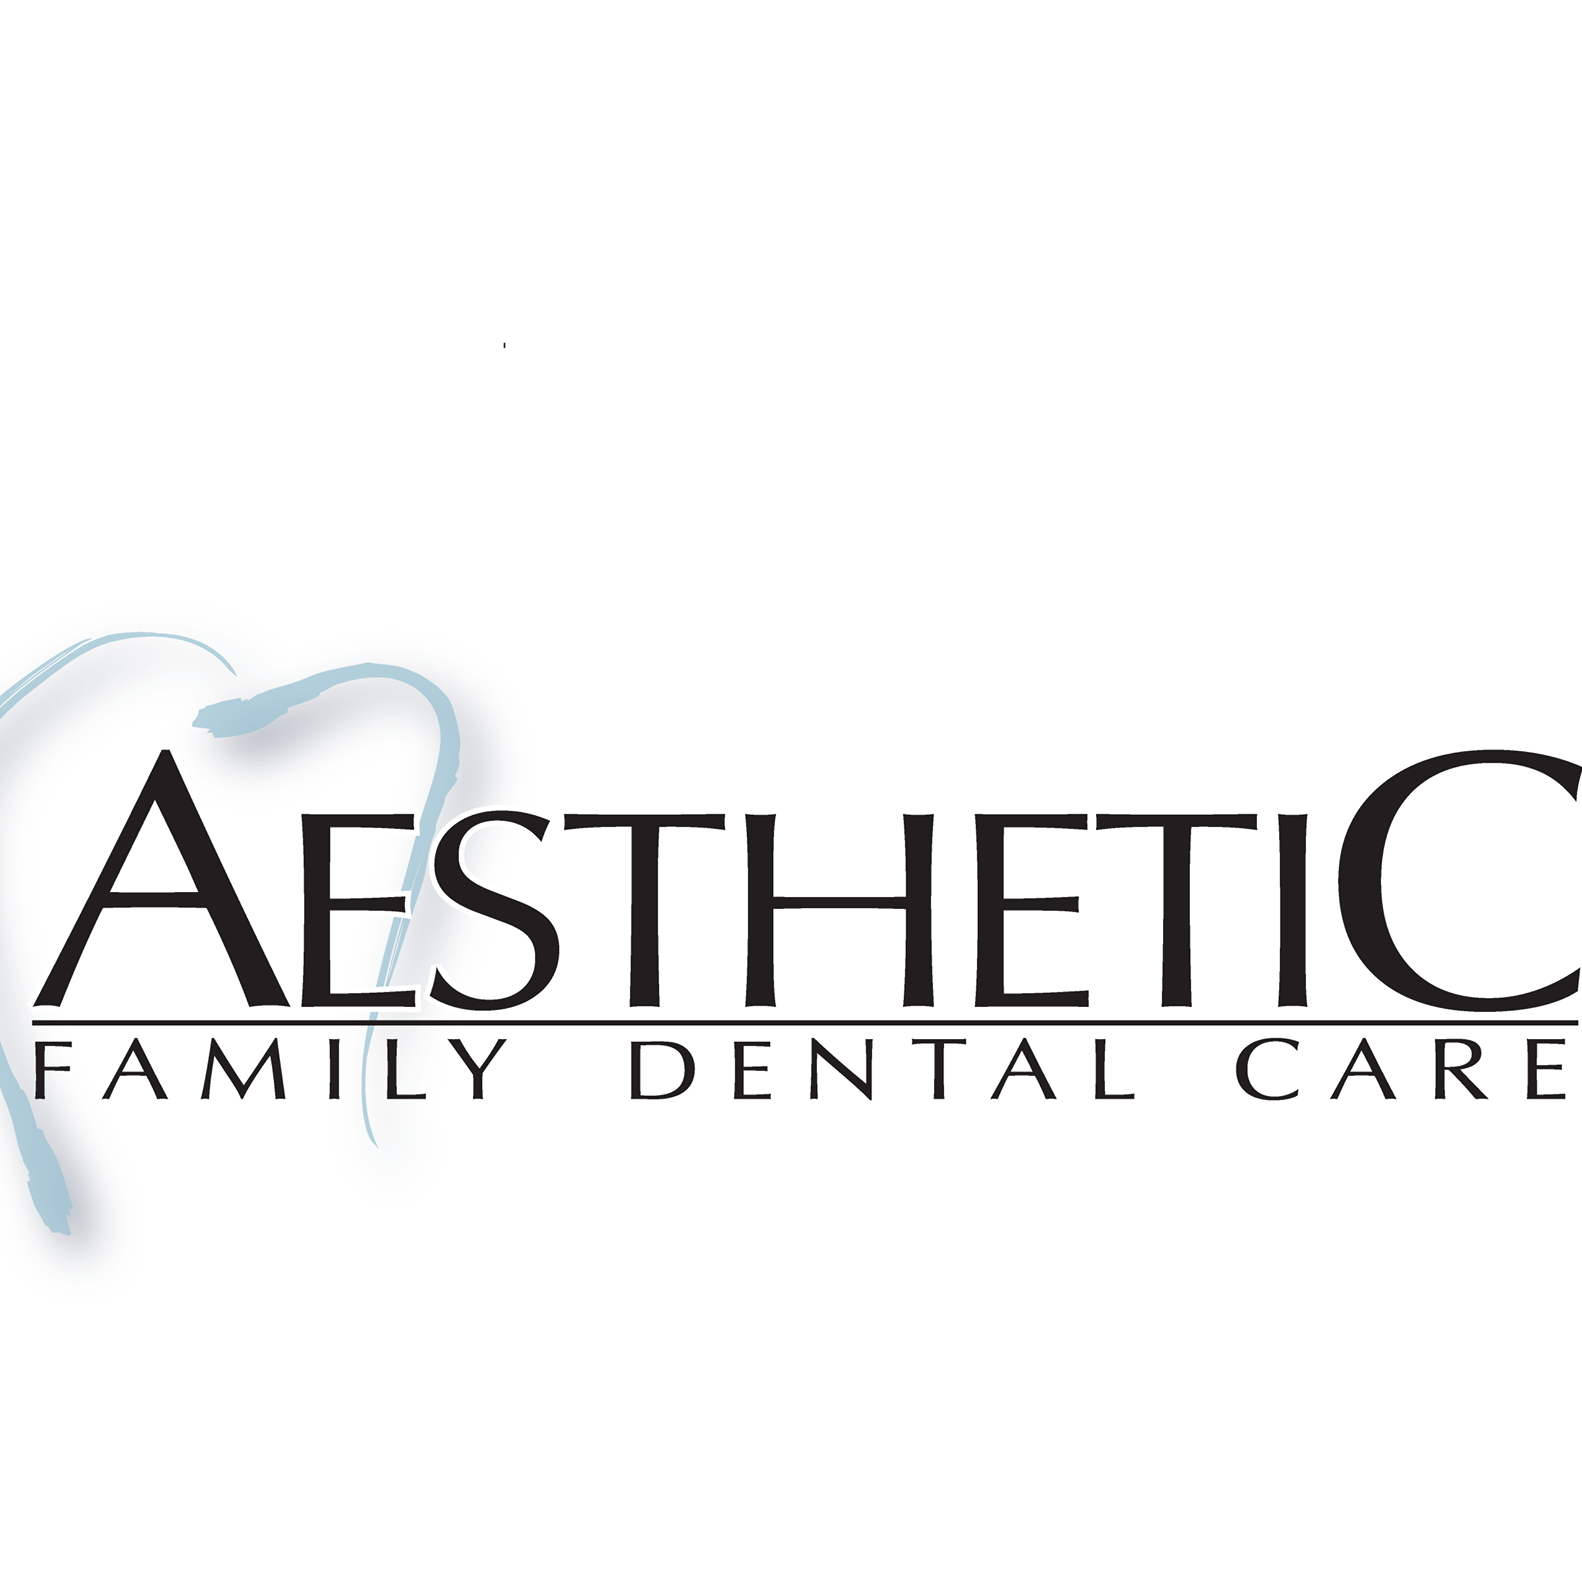 Business logo of Aesthetic Family Dental Care